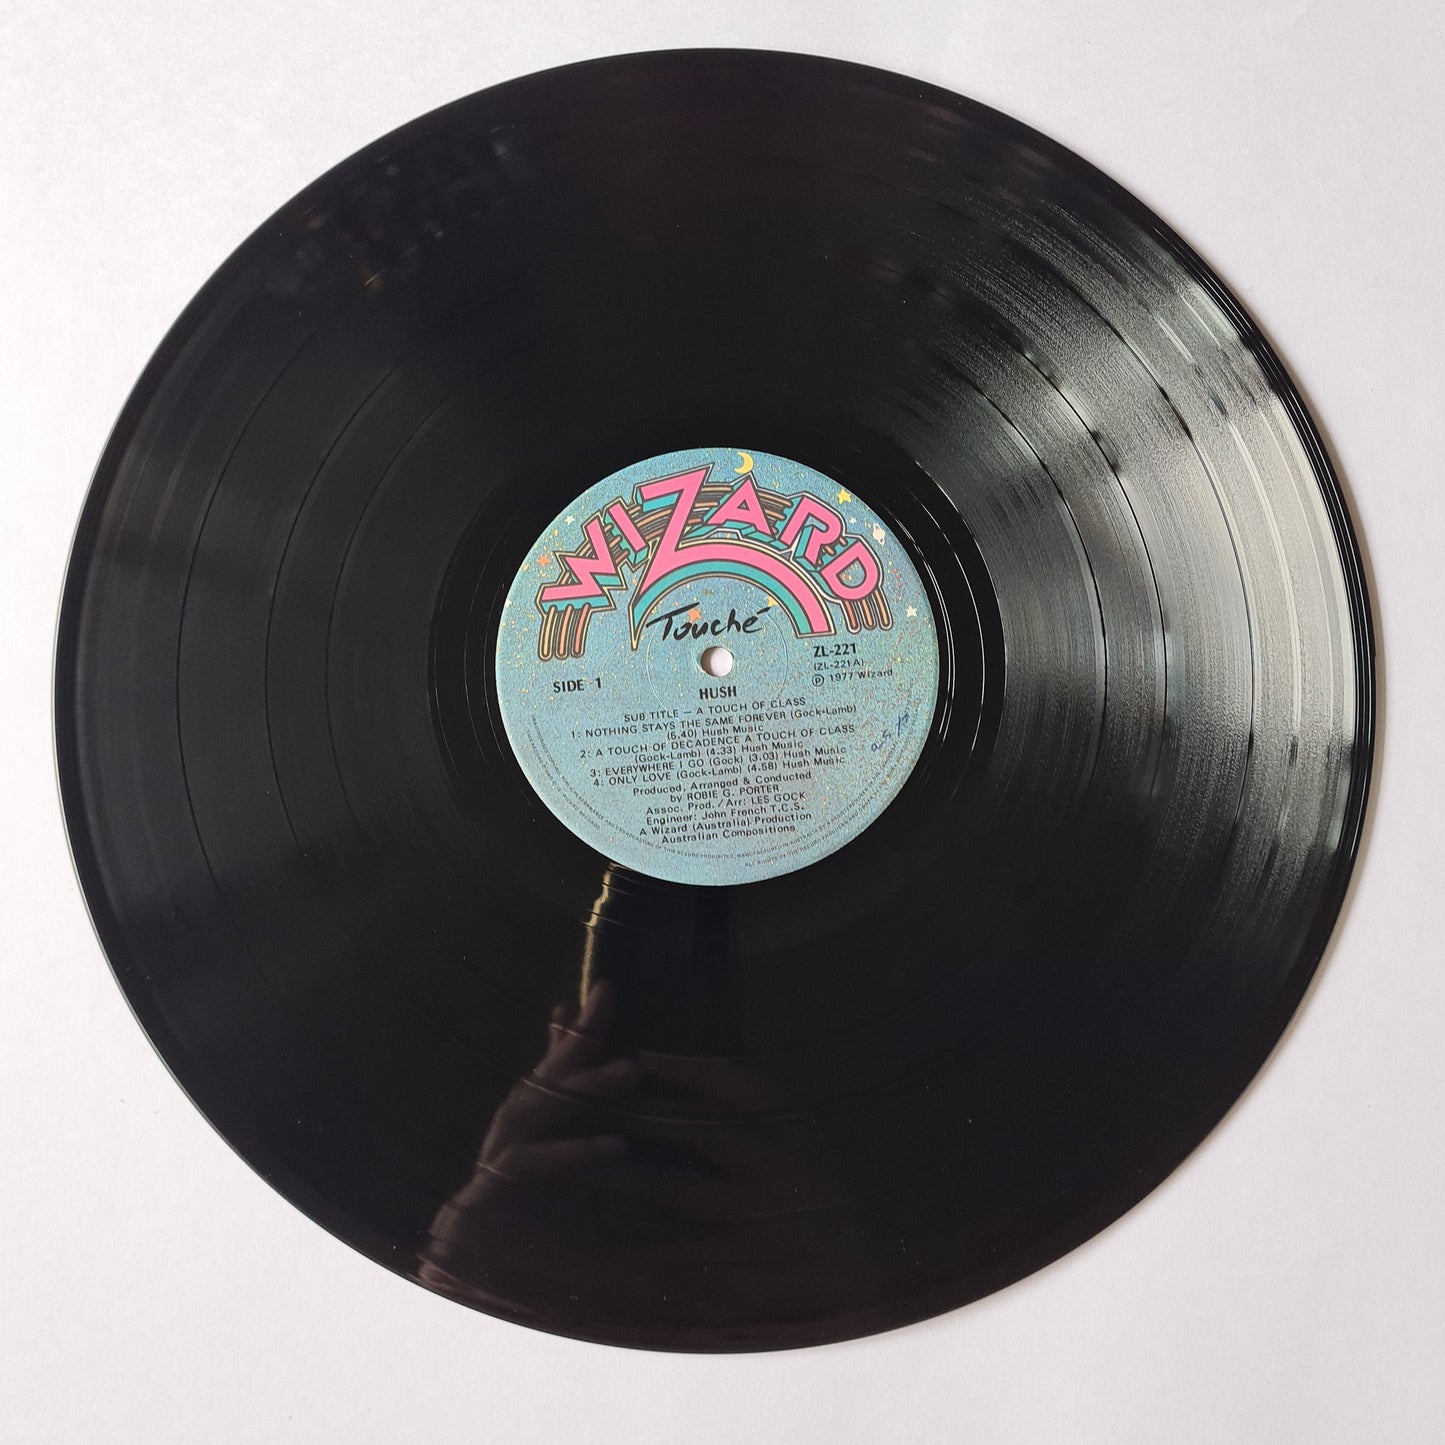 Hush – Touche' -1977 - Vinyl Record